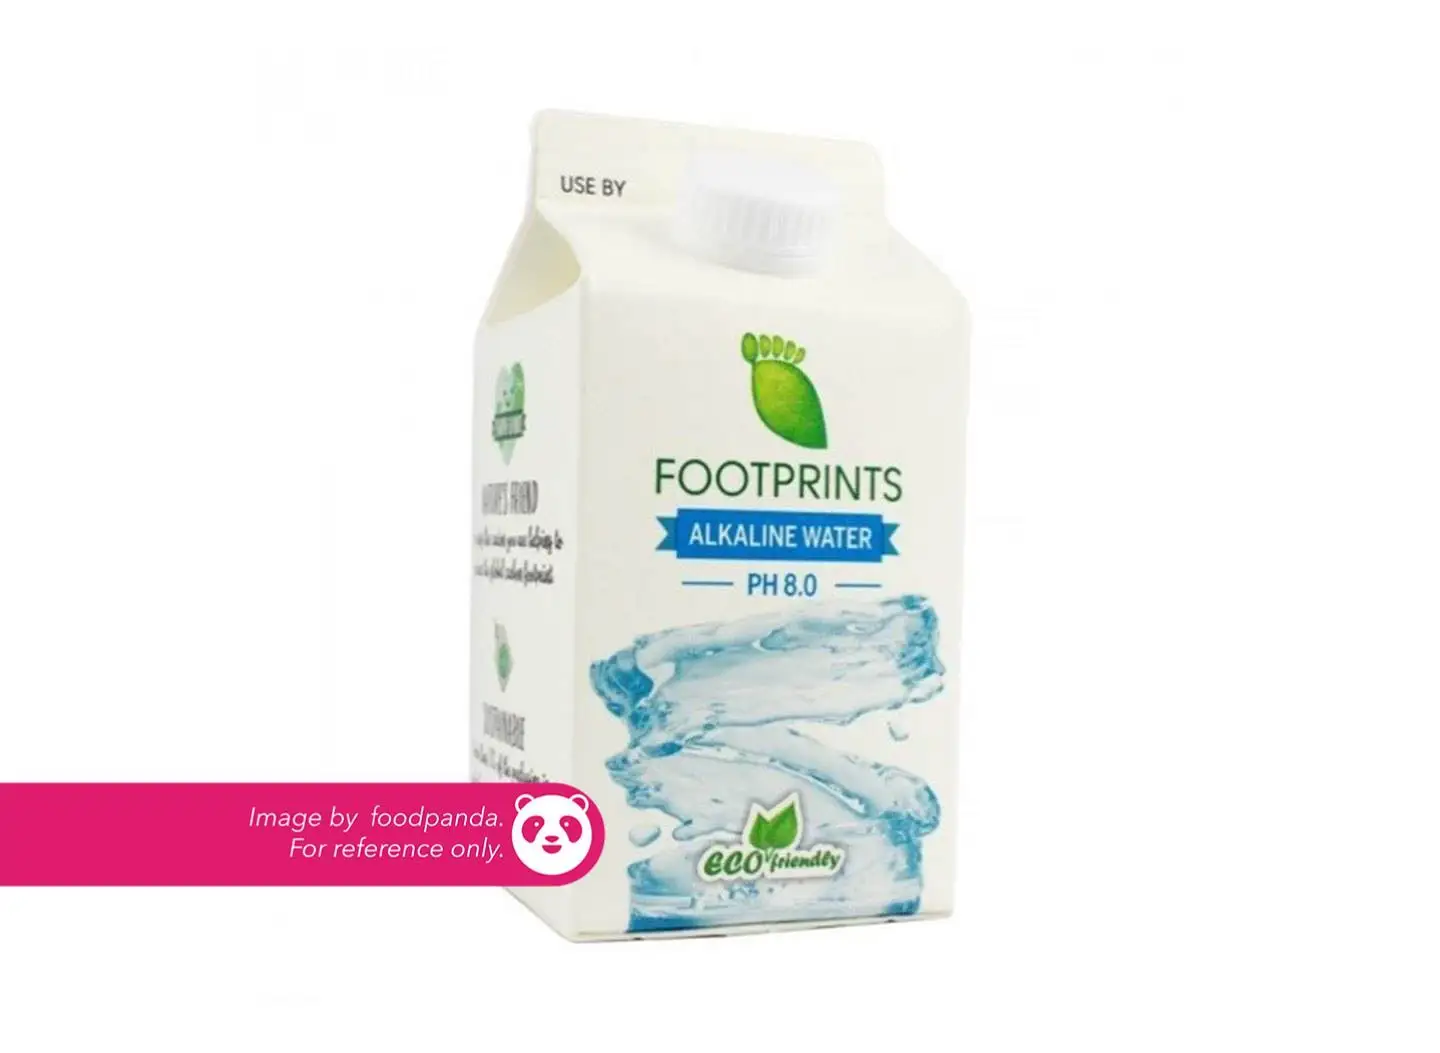 Footprints Alkaline Water